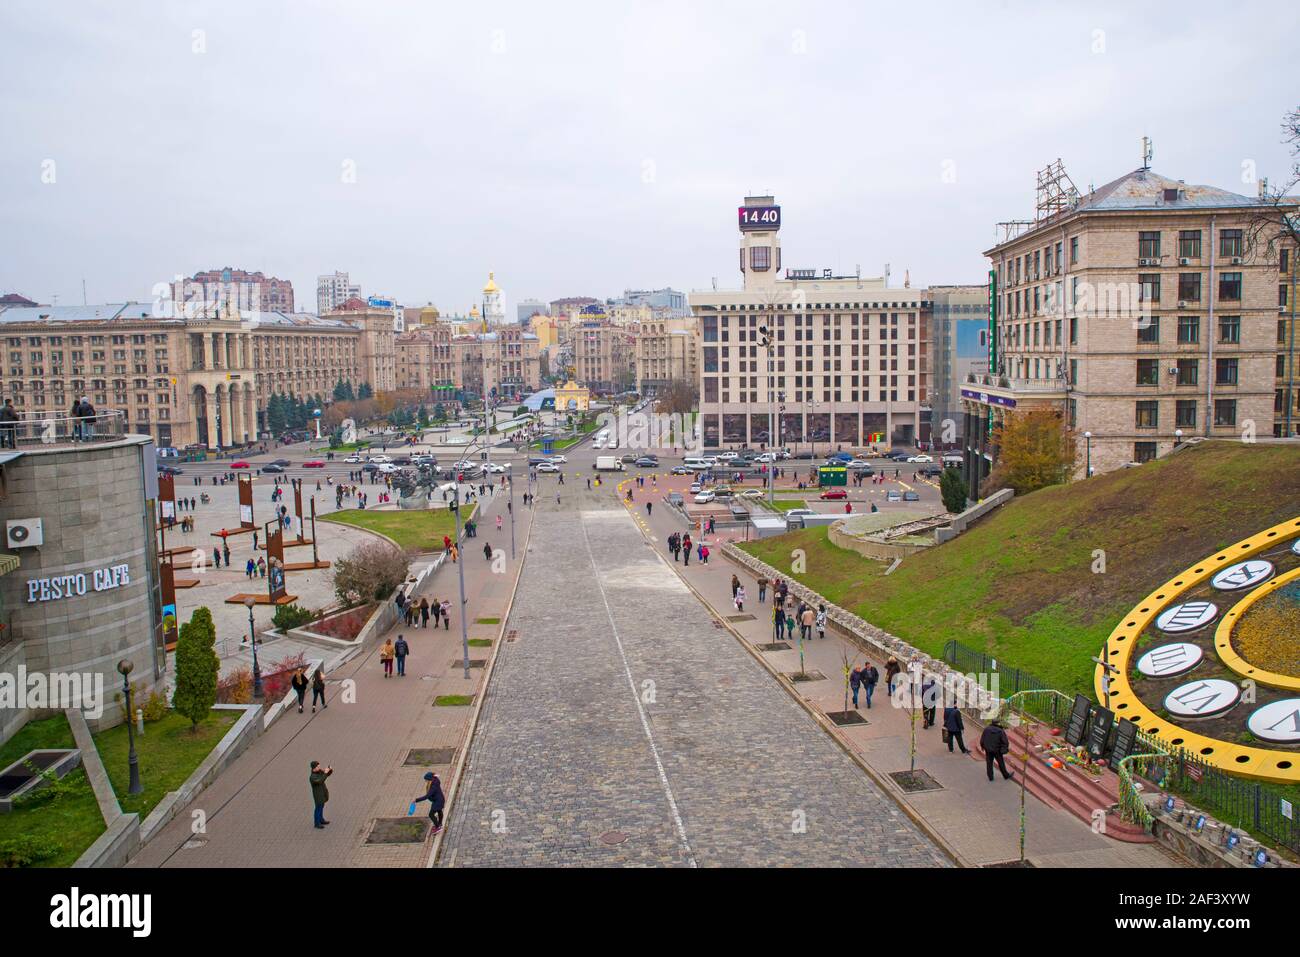 KIEV, UKRAINE - 16 NOVEMBRE 2019 : les citoyens et les touristes en Ukrainean place de l'Indépendance de Kiev, place principale de la ville, Maidan Nezalezhnosti Banque D'Images